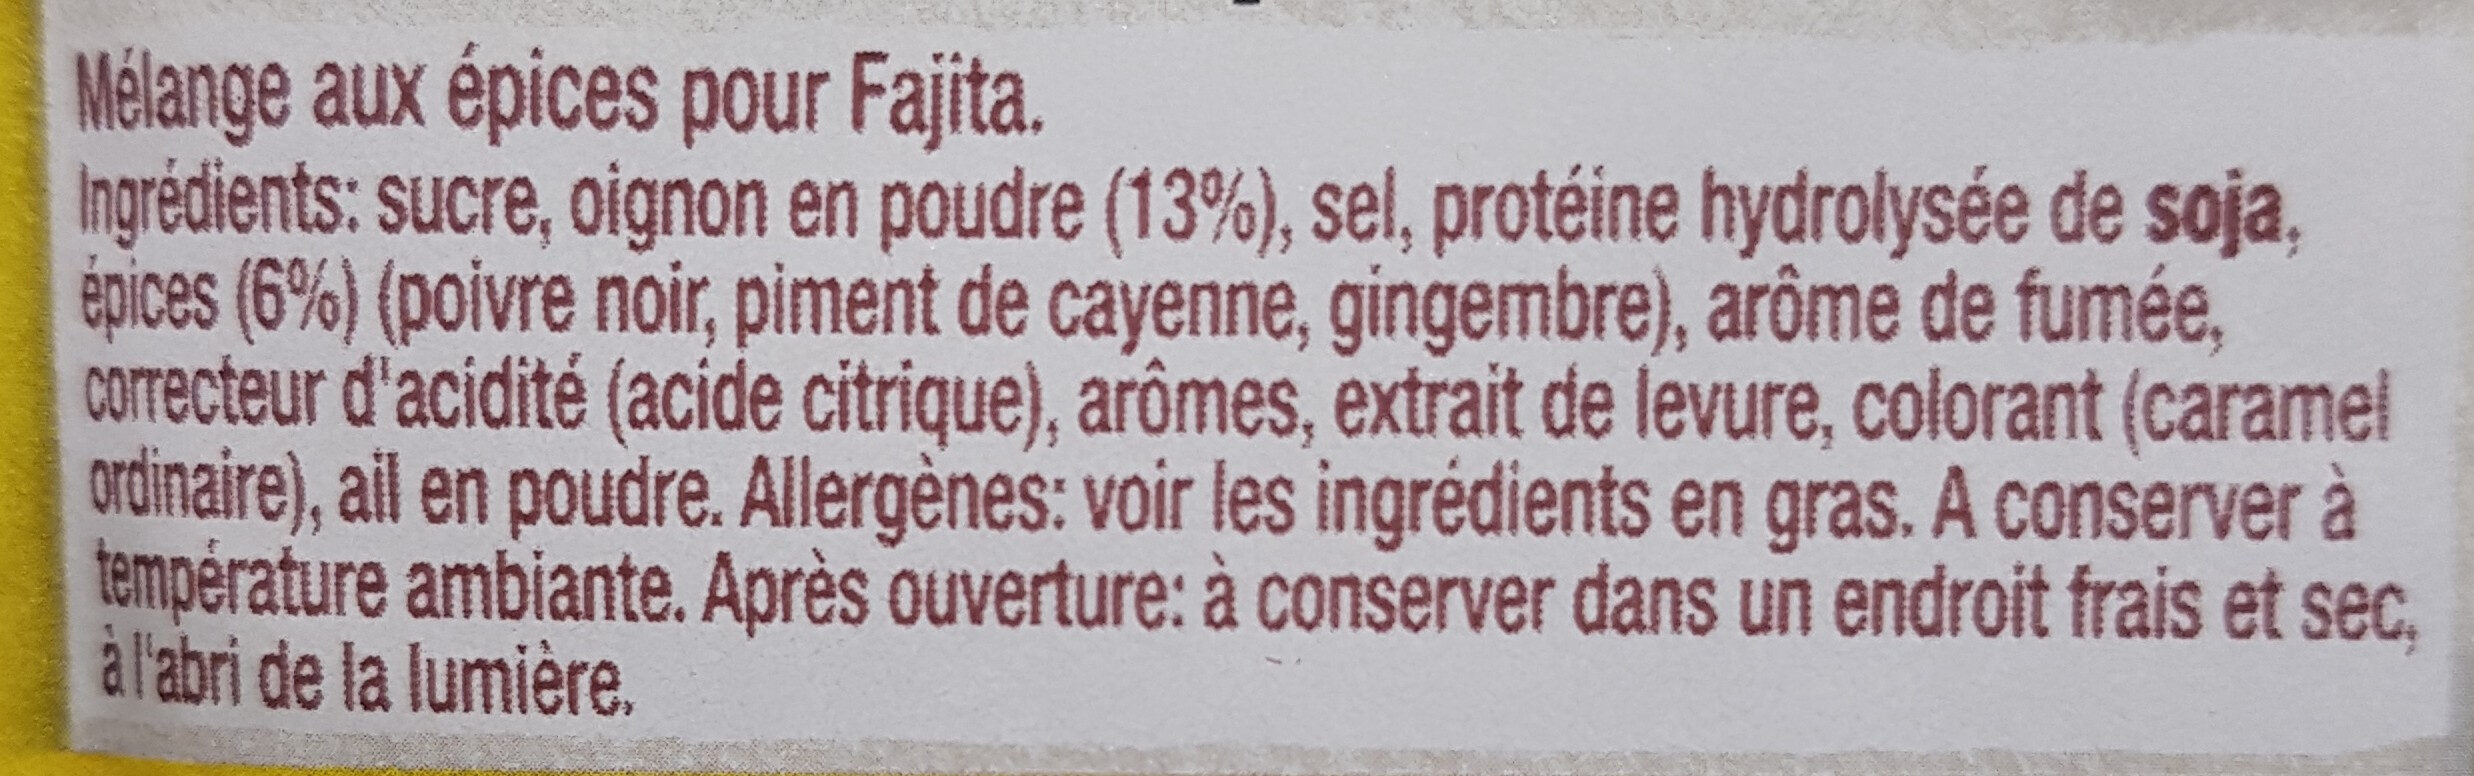 Mélange aux épices fajitas - Ingredients - fr